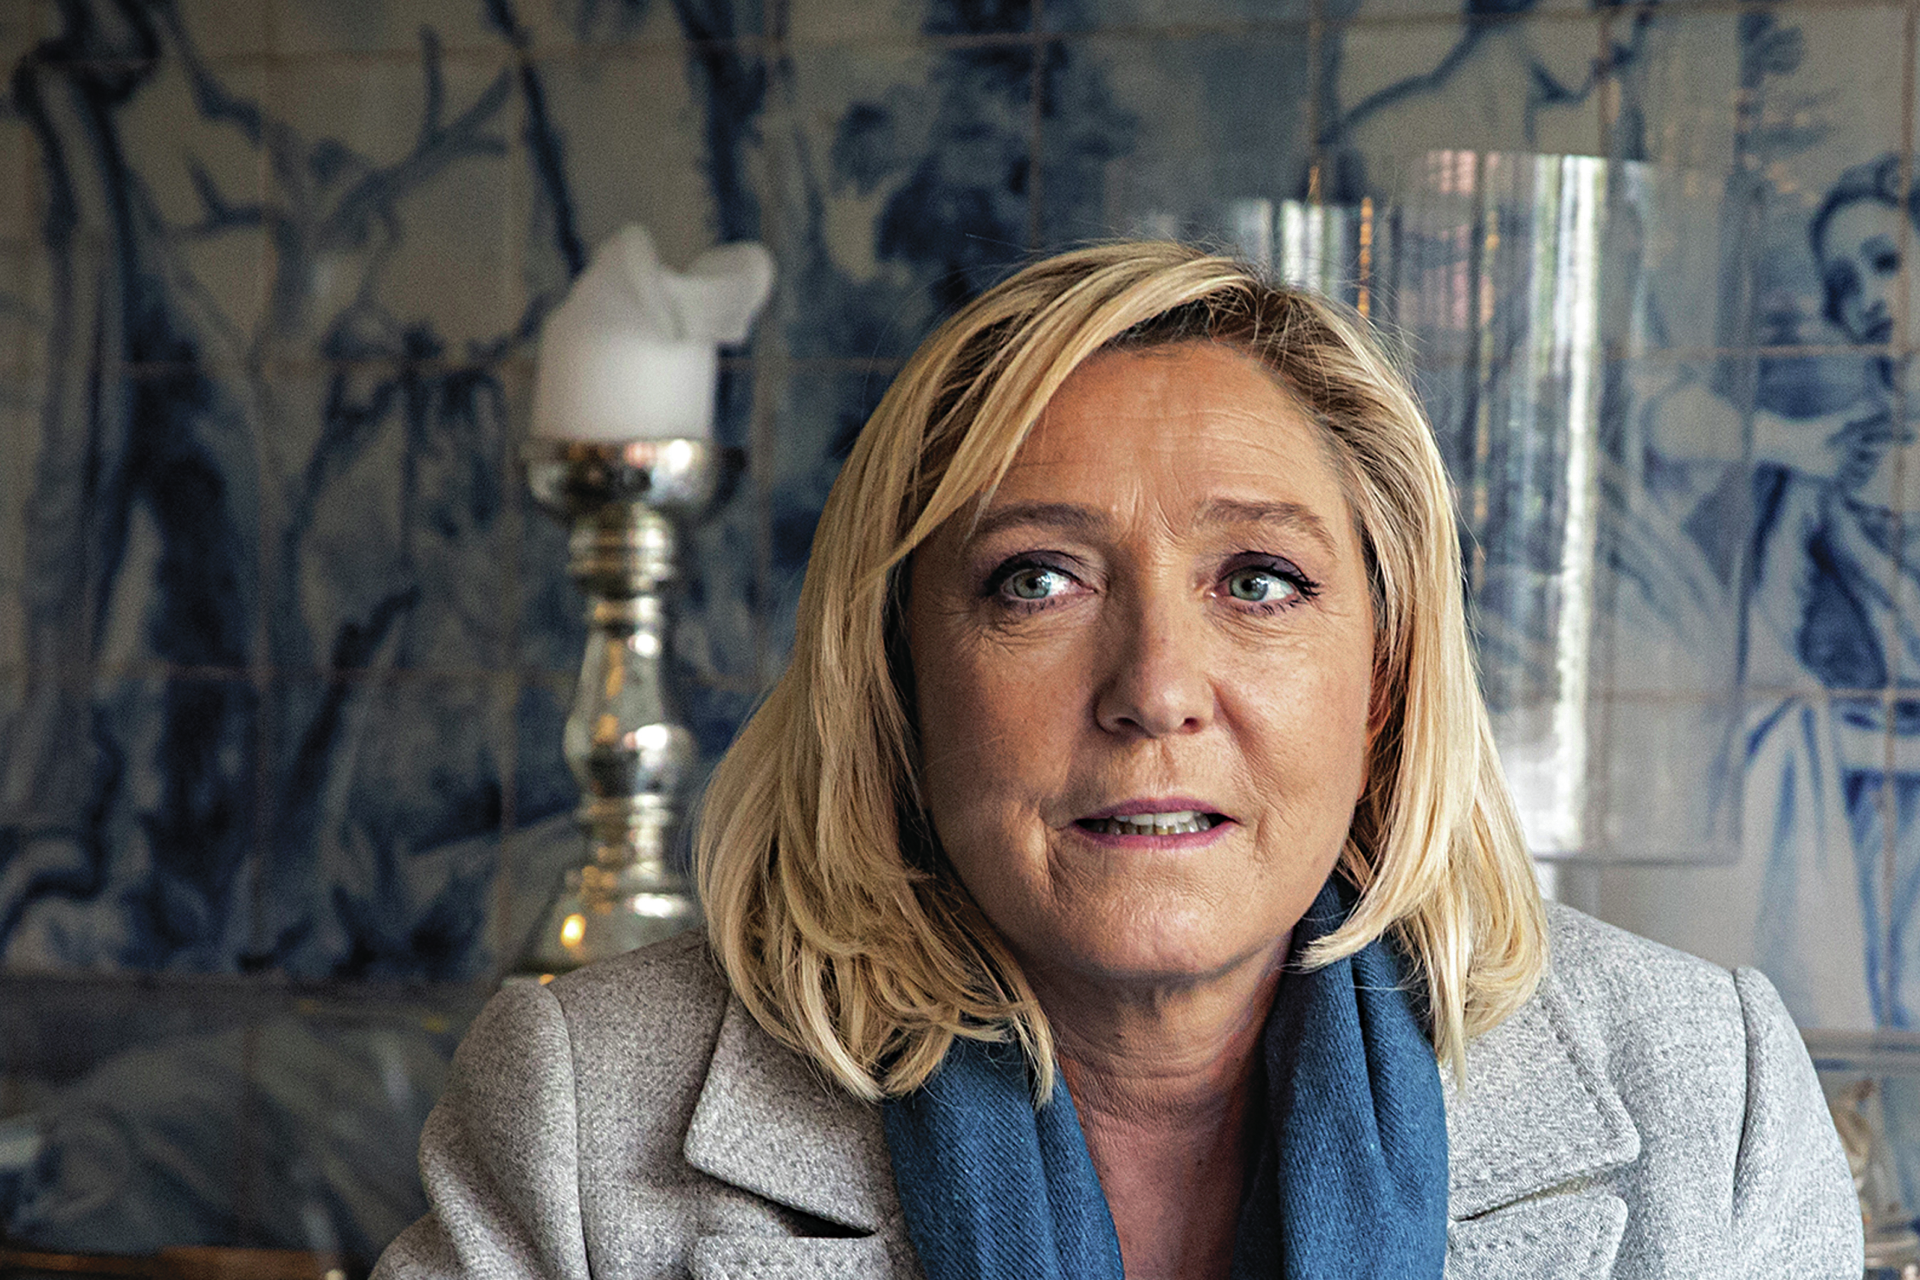 Le Pen expressa apoio para com os militares